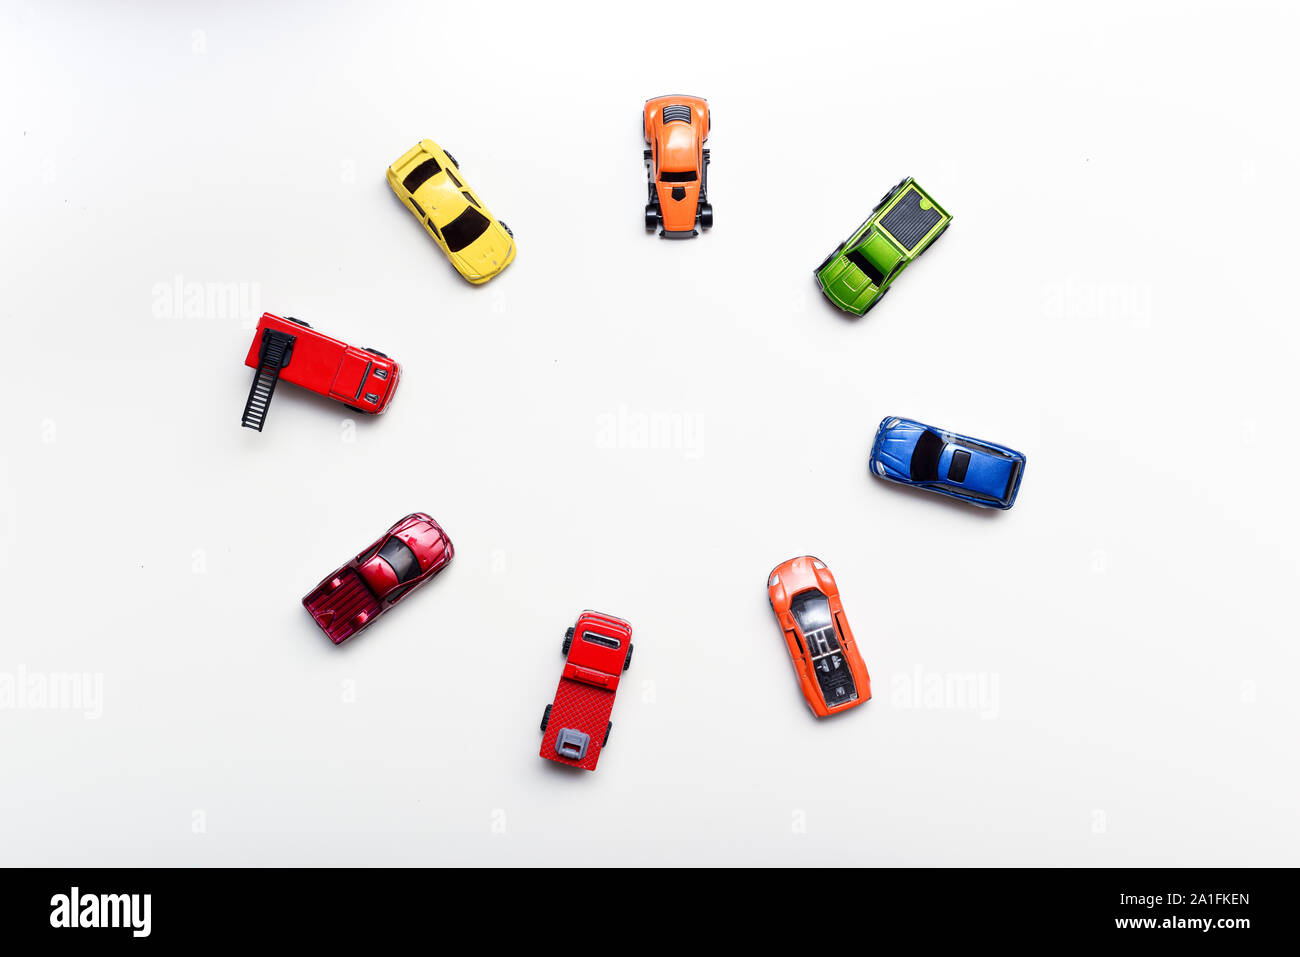 Fotografía cenital de coches de juguete infantil organizado sobre una tabla blanca, ningún pueblo en shot Foto de stock